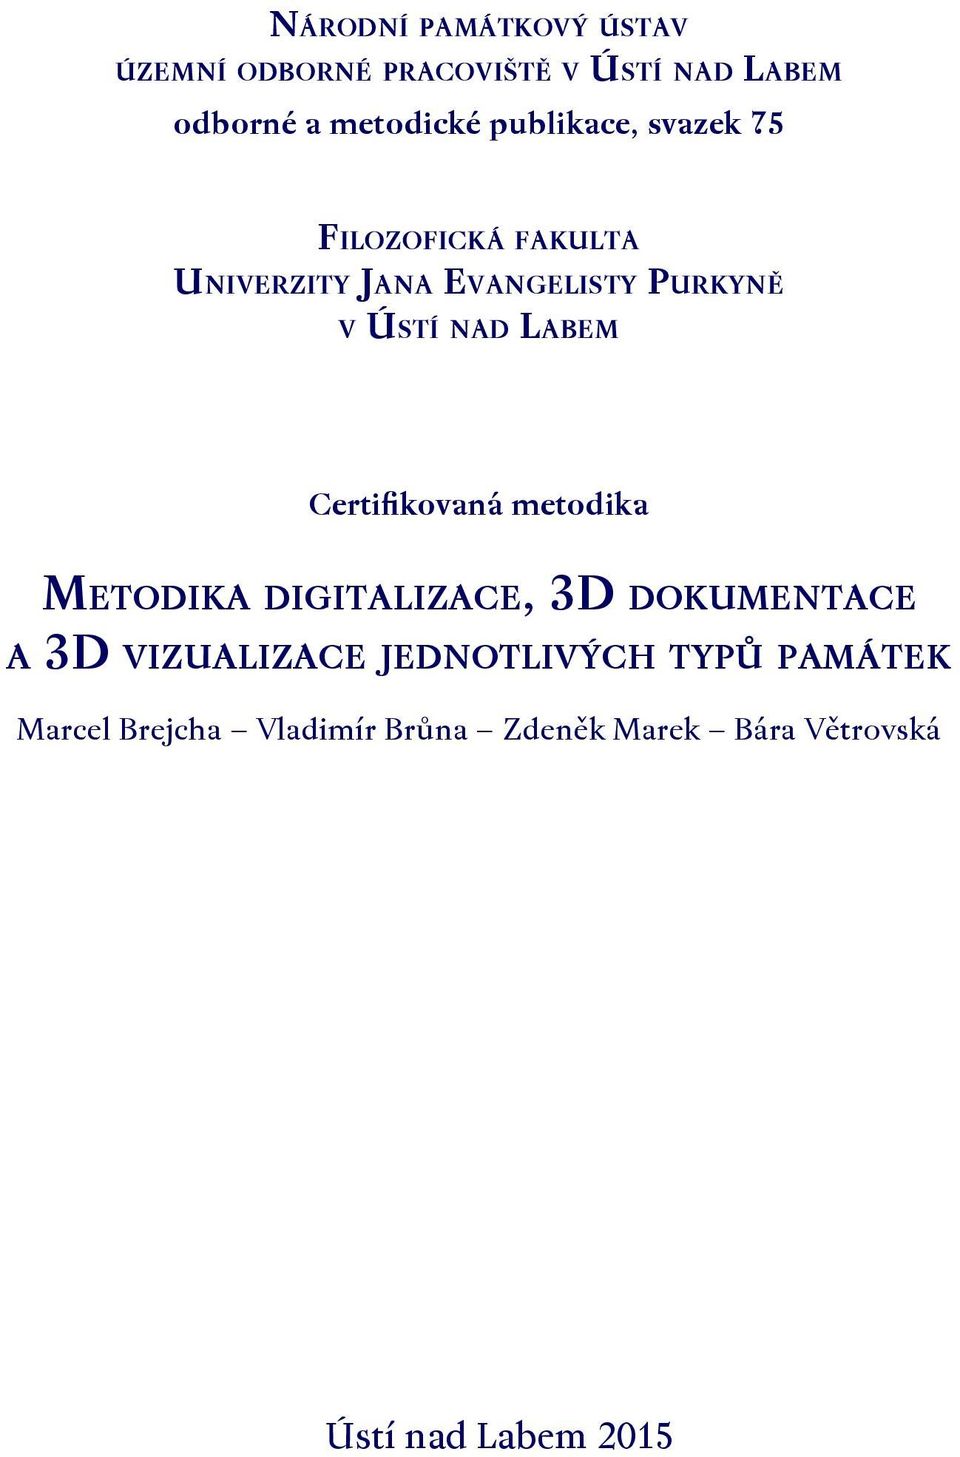 Labem Certifikovaná metodika Metodika digitalizace, 3D dokumentace a 3D vizualizace